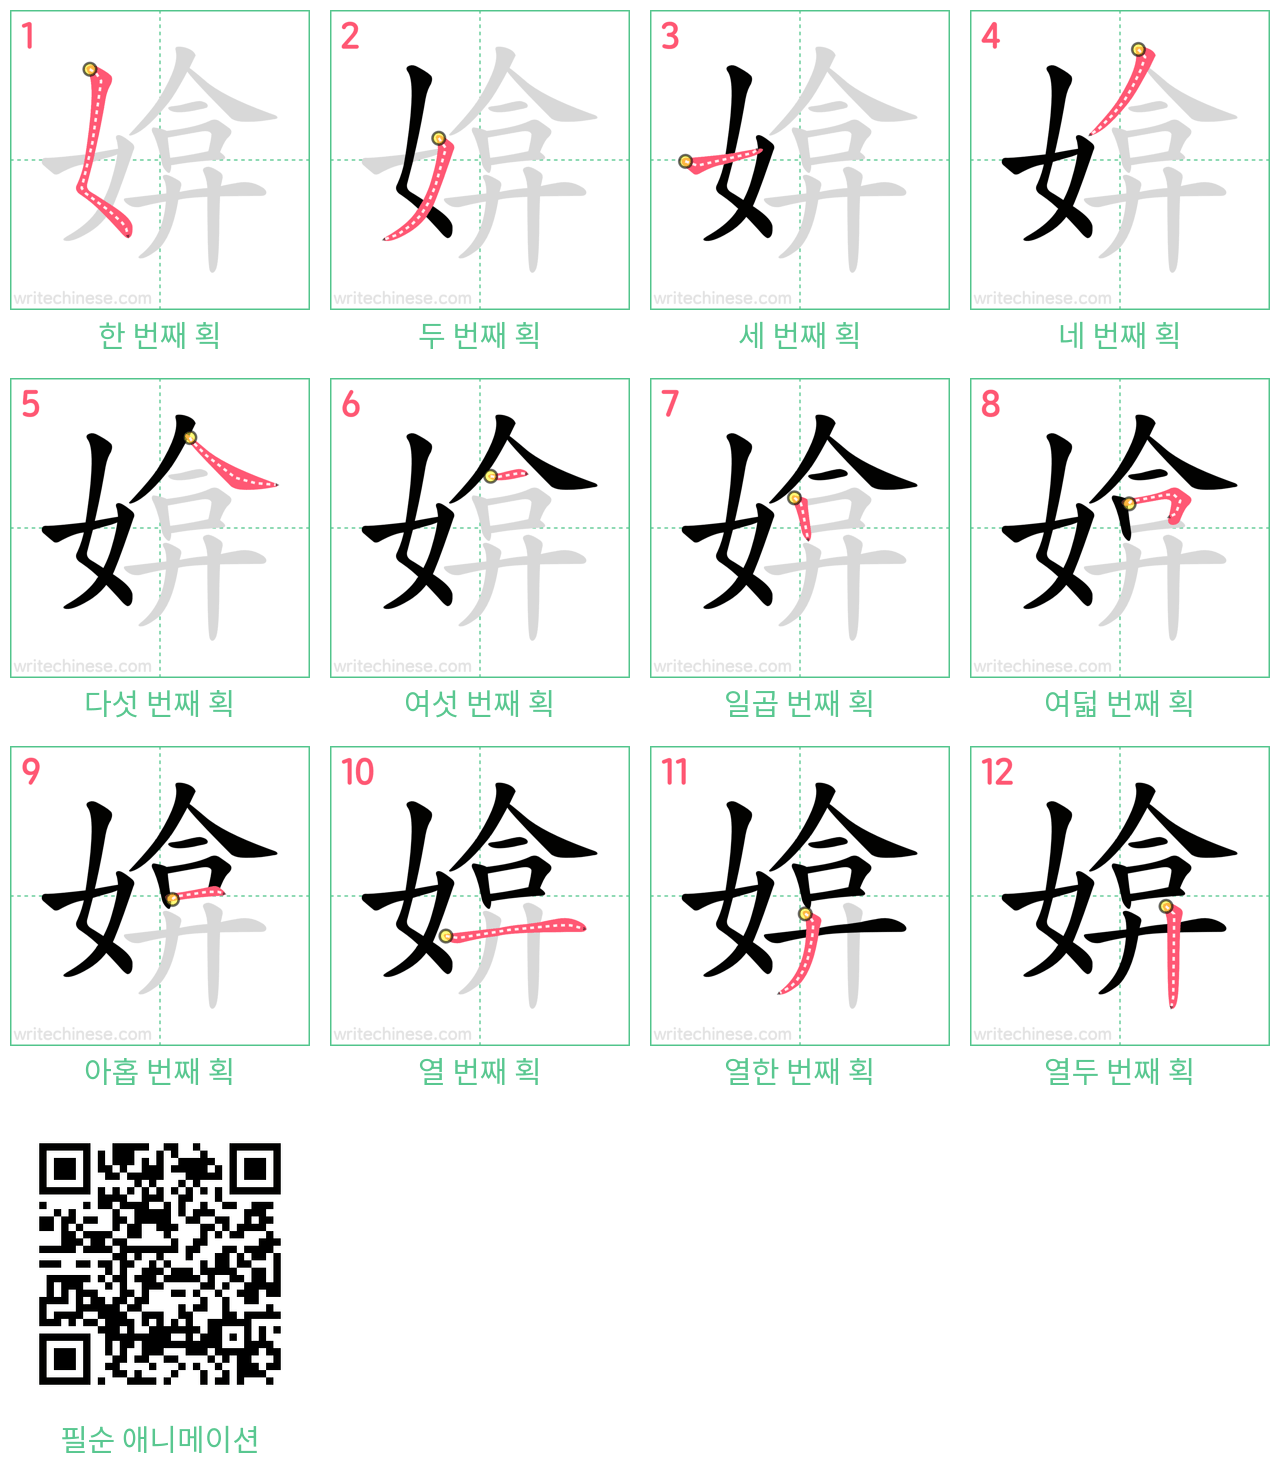 媕 step-by-step stroke order diagrams